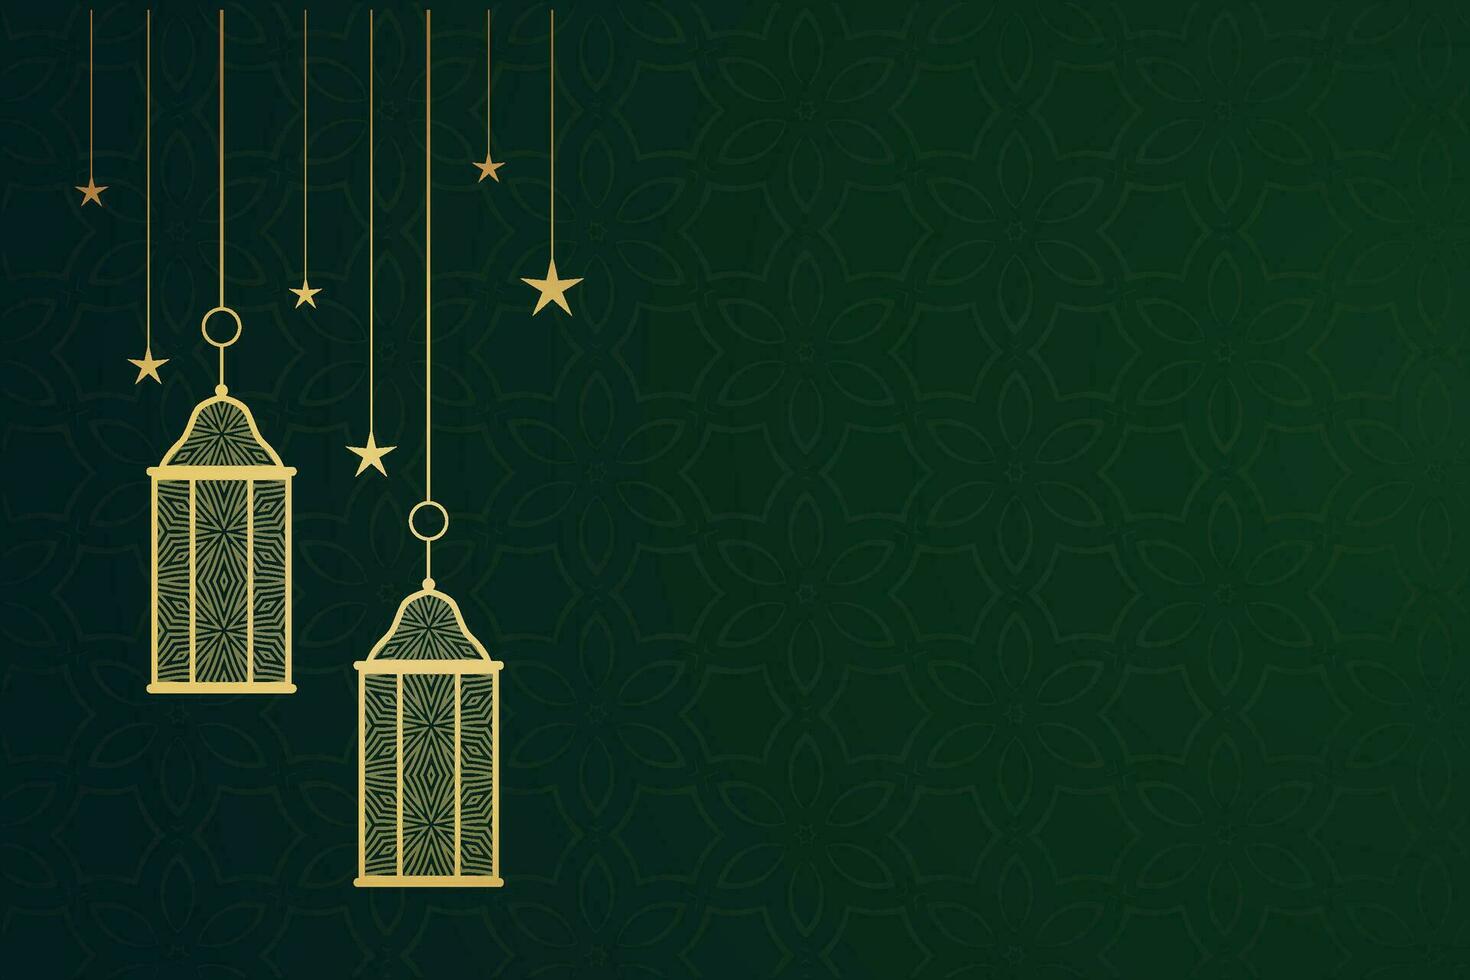 Ramadan eid mubarak groet kaart met moskee silhouet vrij vector illustratie